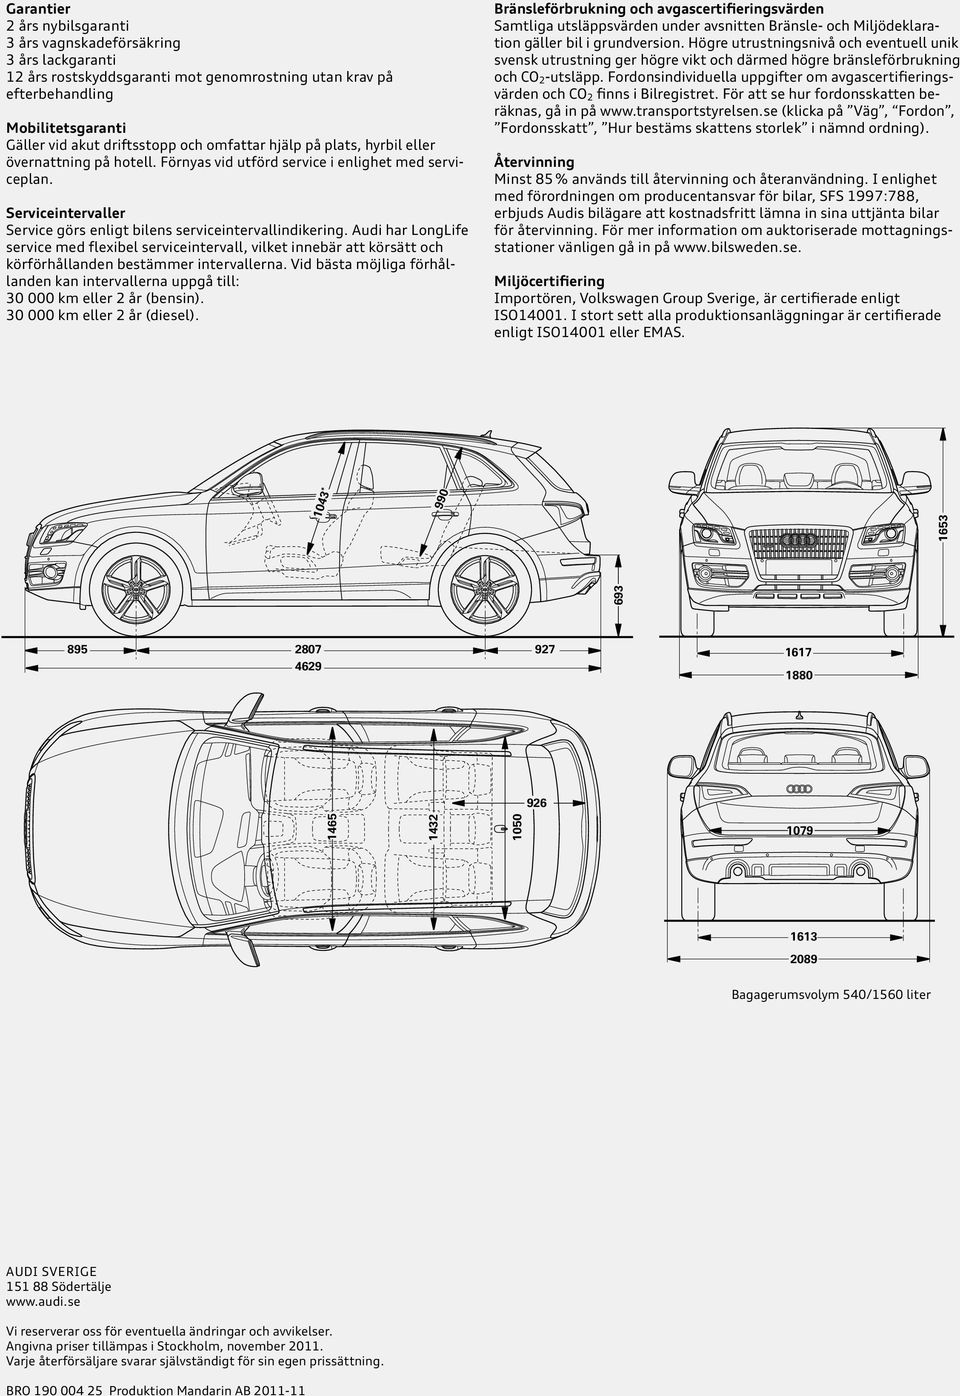 Audi har LongLife service med flexibel serviceintervall, vilket innebär att körsätt och körförhållanden bestämmer intervallerna.